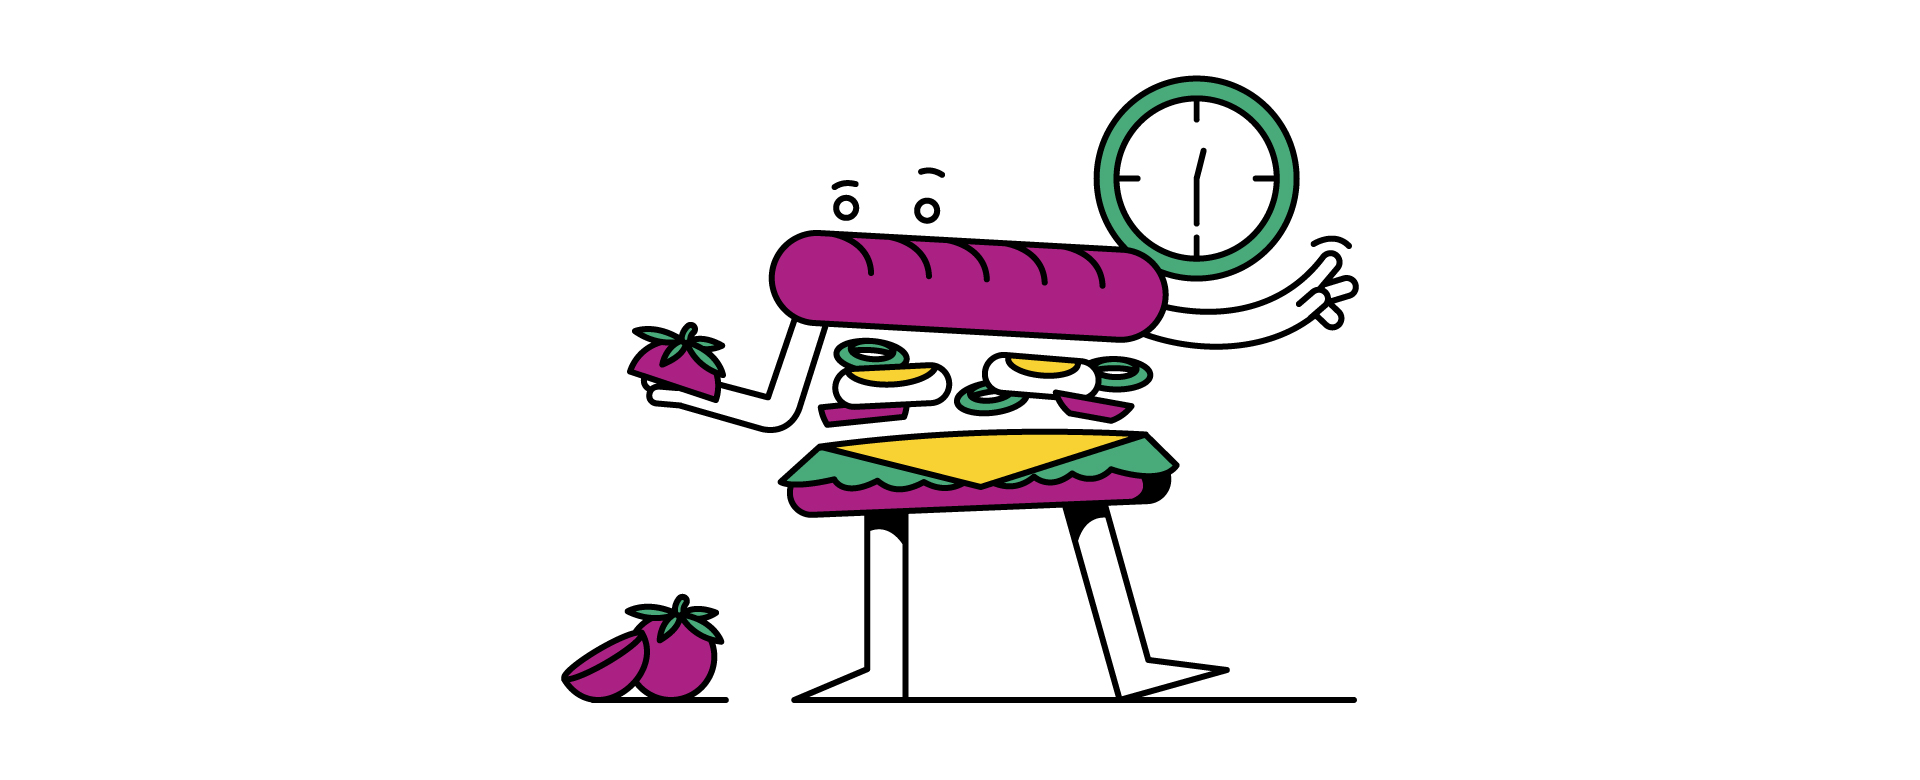 Illustration of food